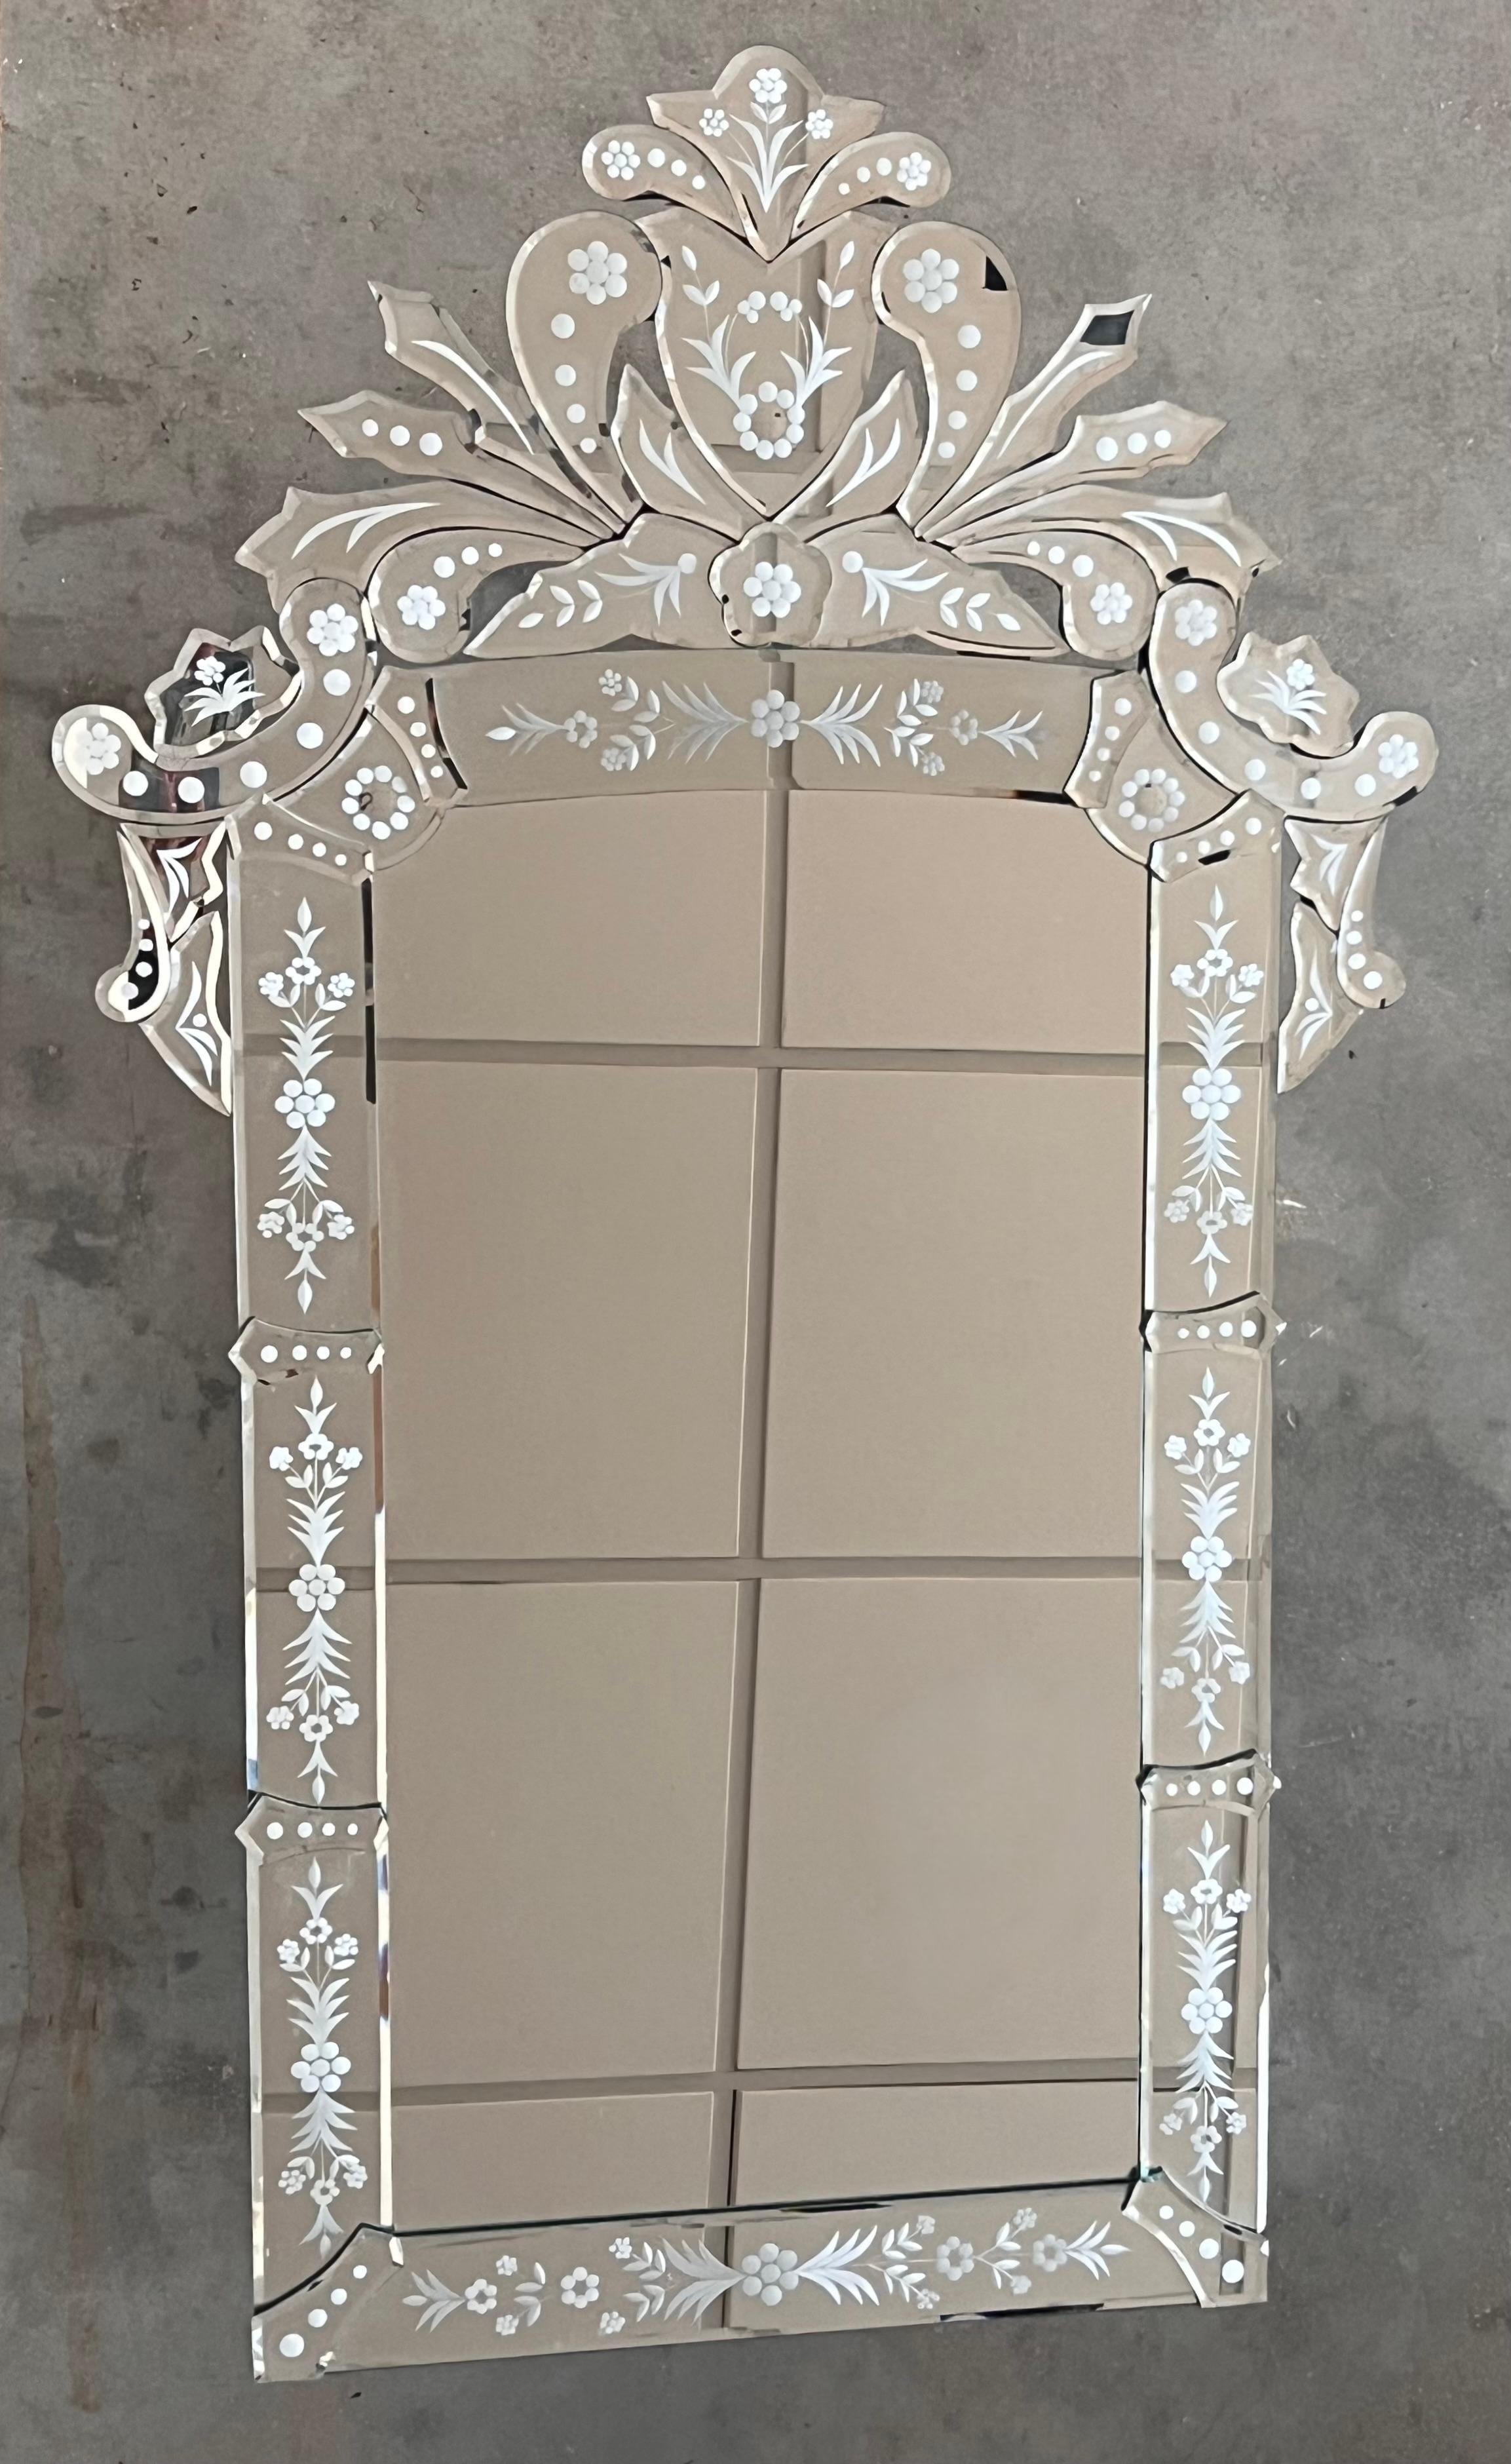 Miroir vénitien en verre à bordure façonnée et gravée, surmonté de crêtes naturalistes gravées en miroir.